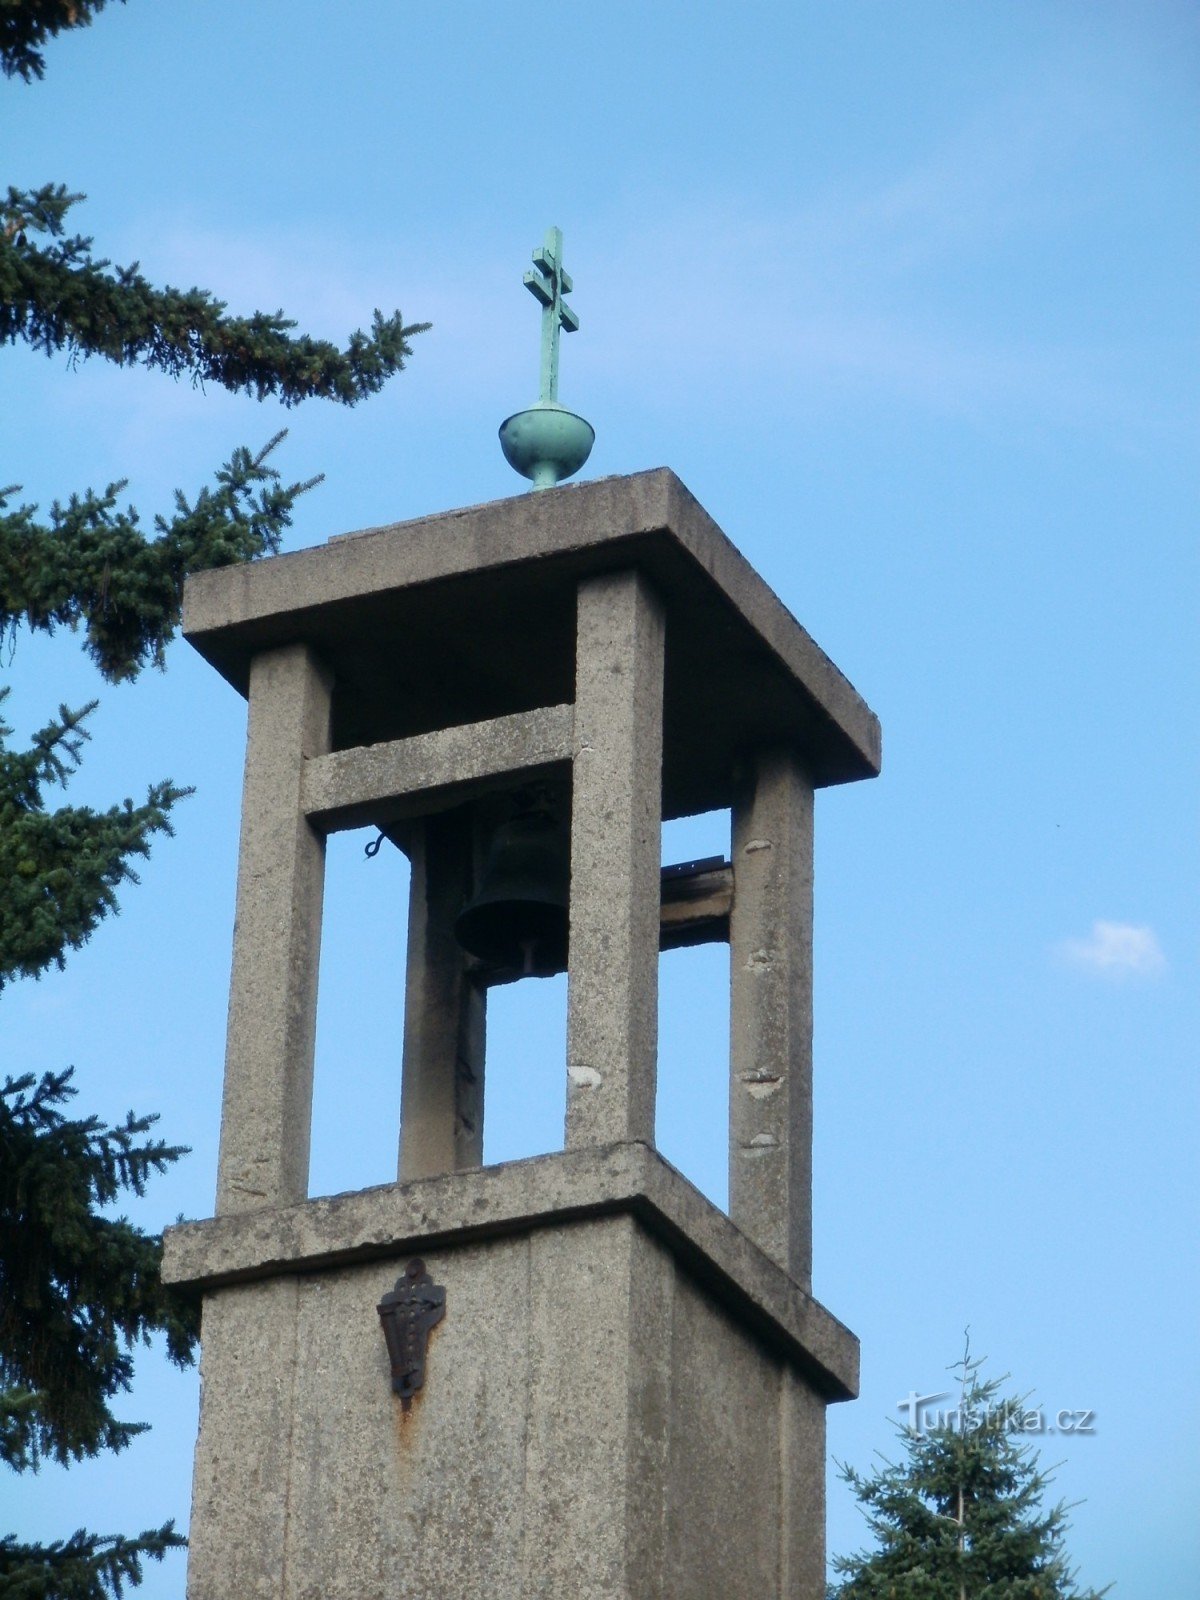 Градец Кралове - колокольня в Пухове